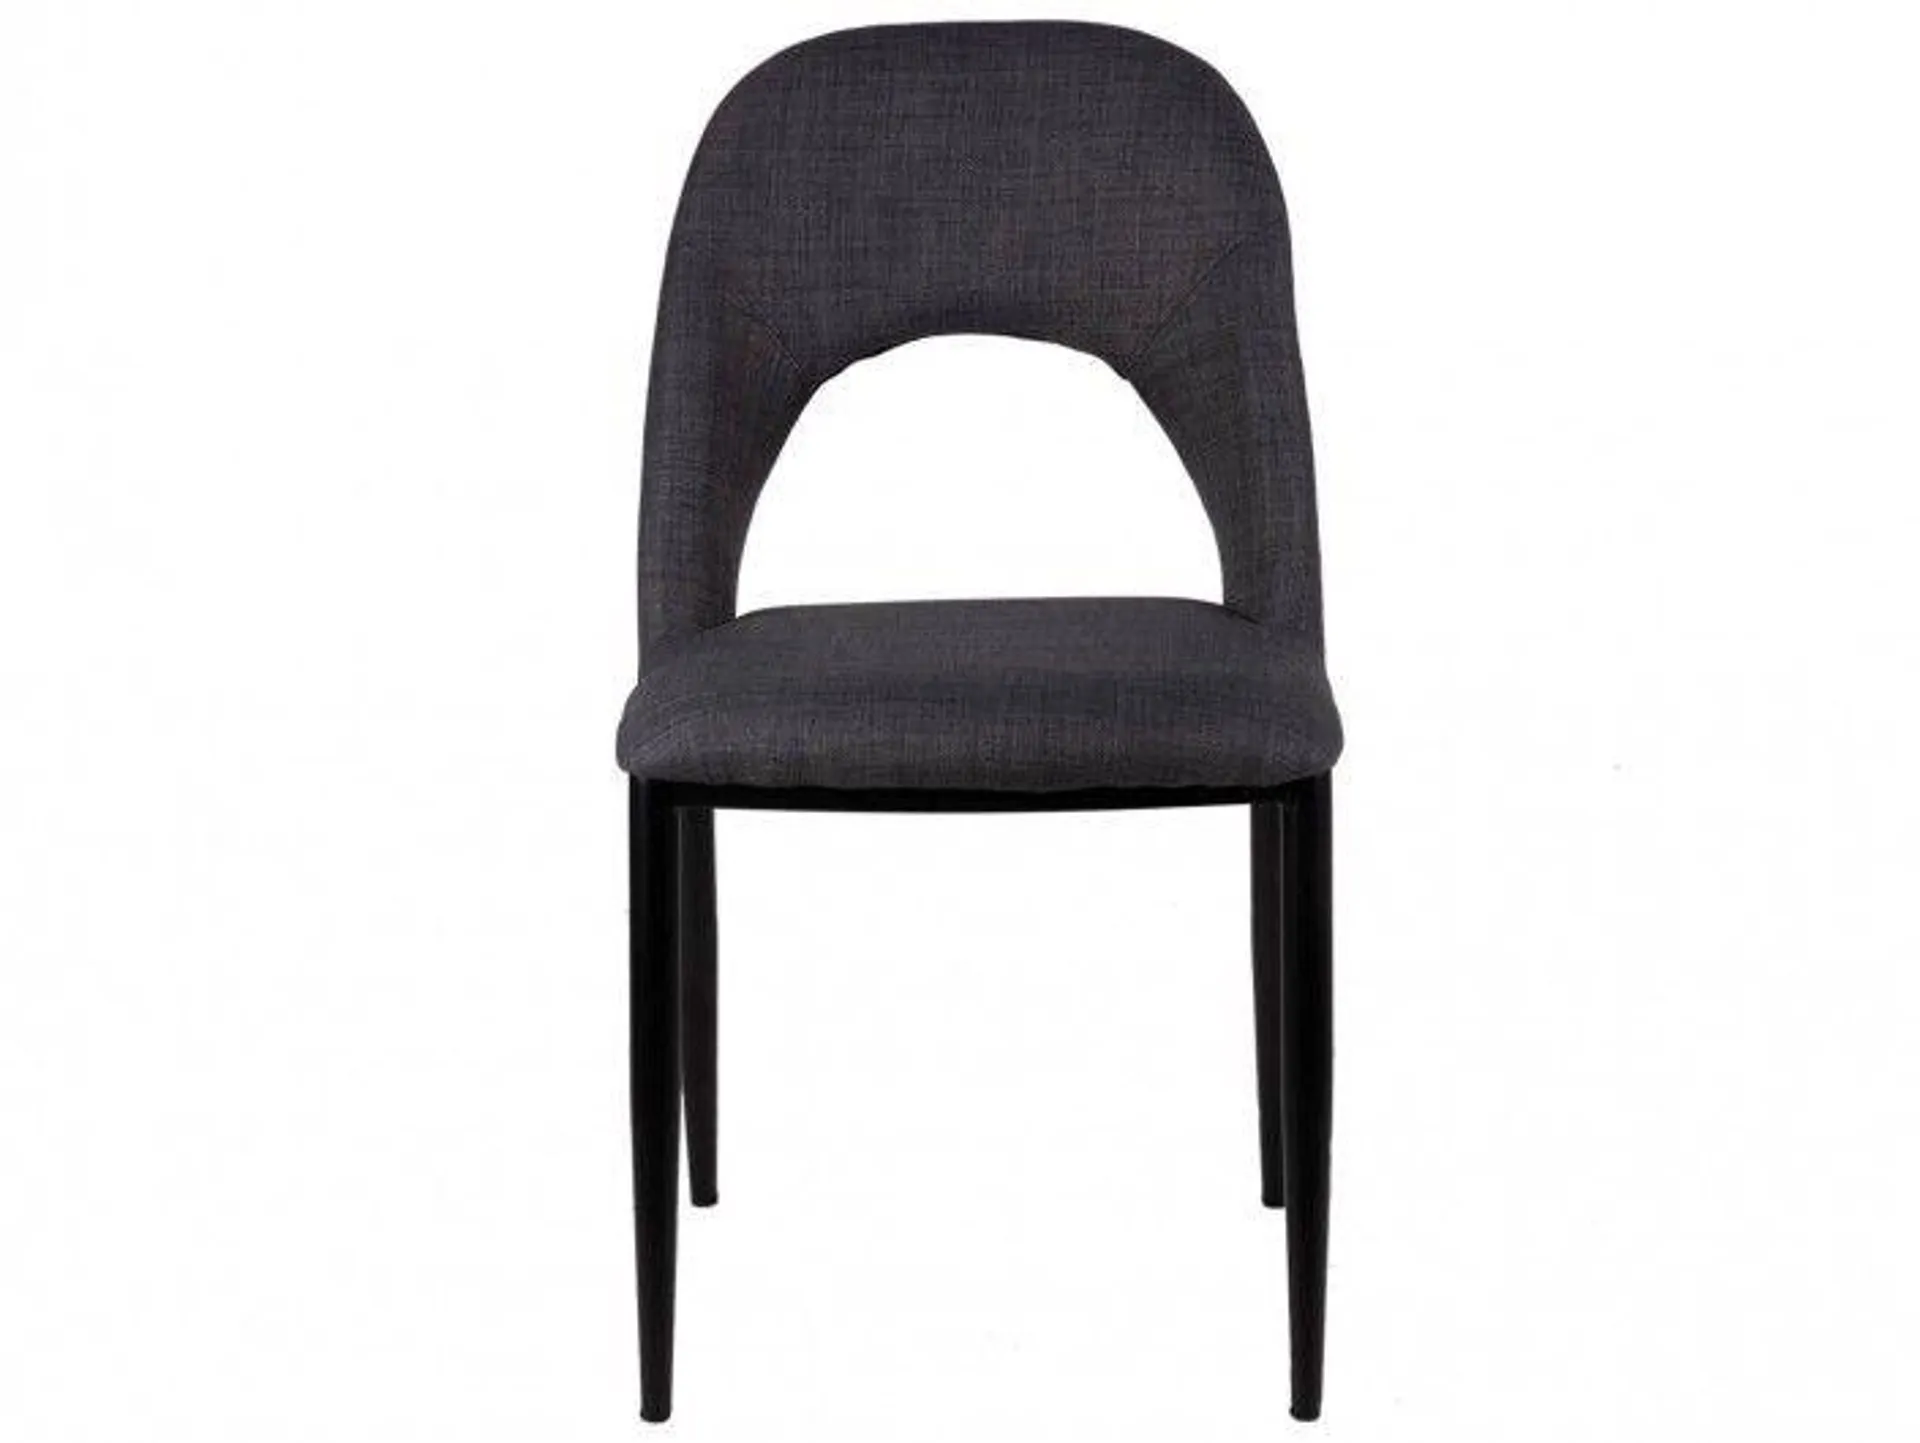 Pack 2 sillas de comedor tapizado gris oscuro y patas metálicas